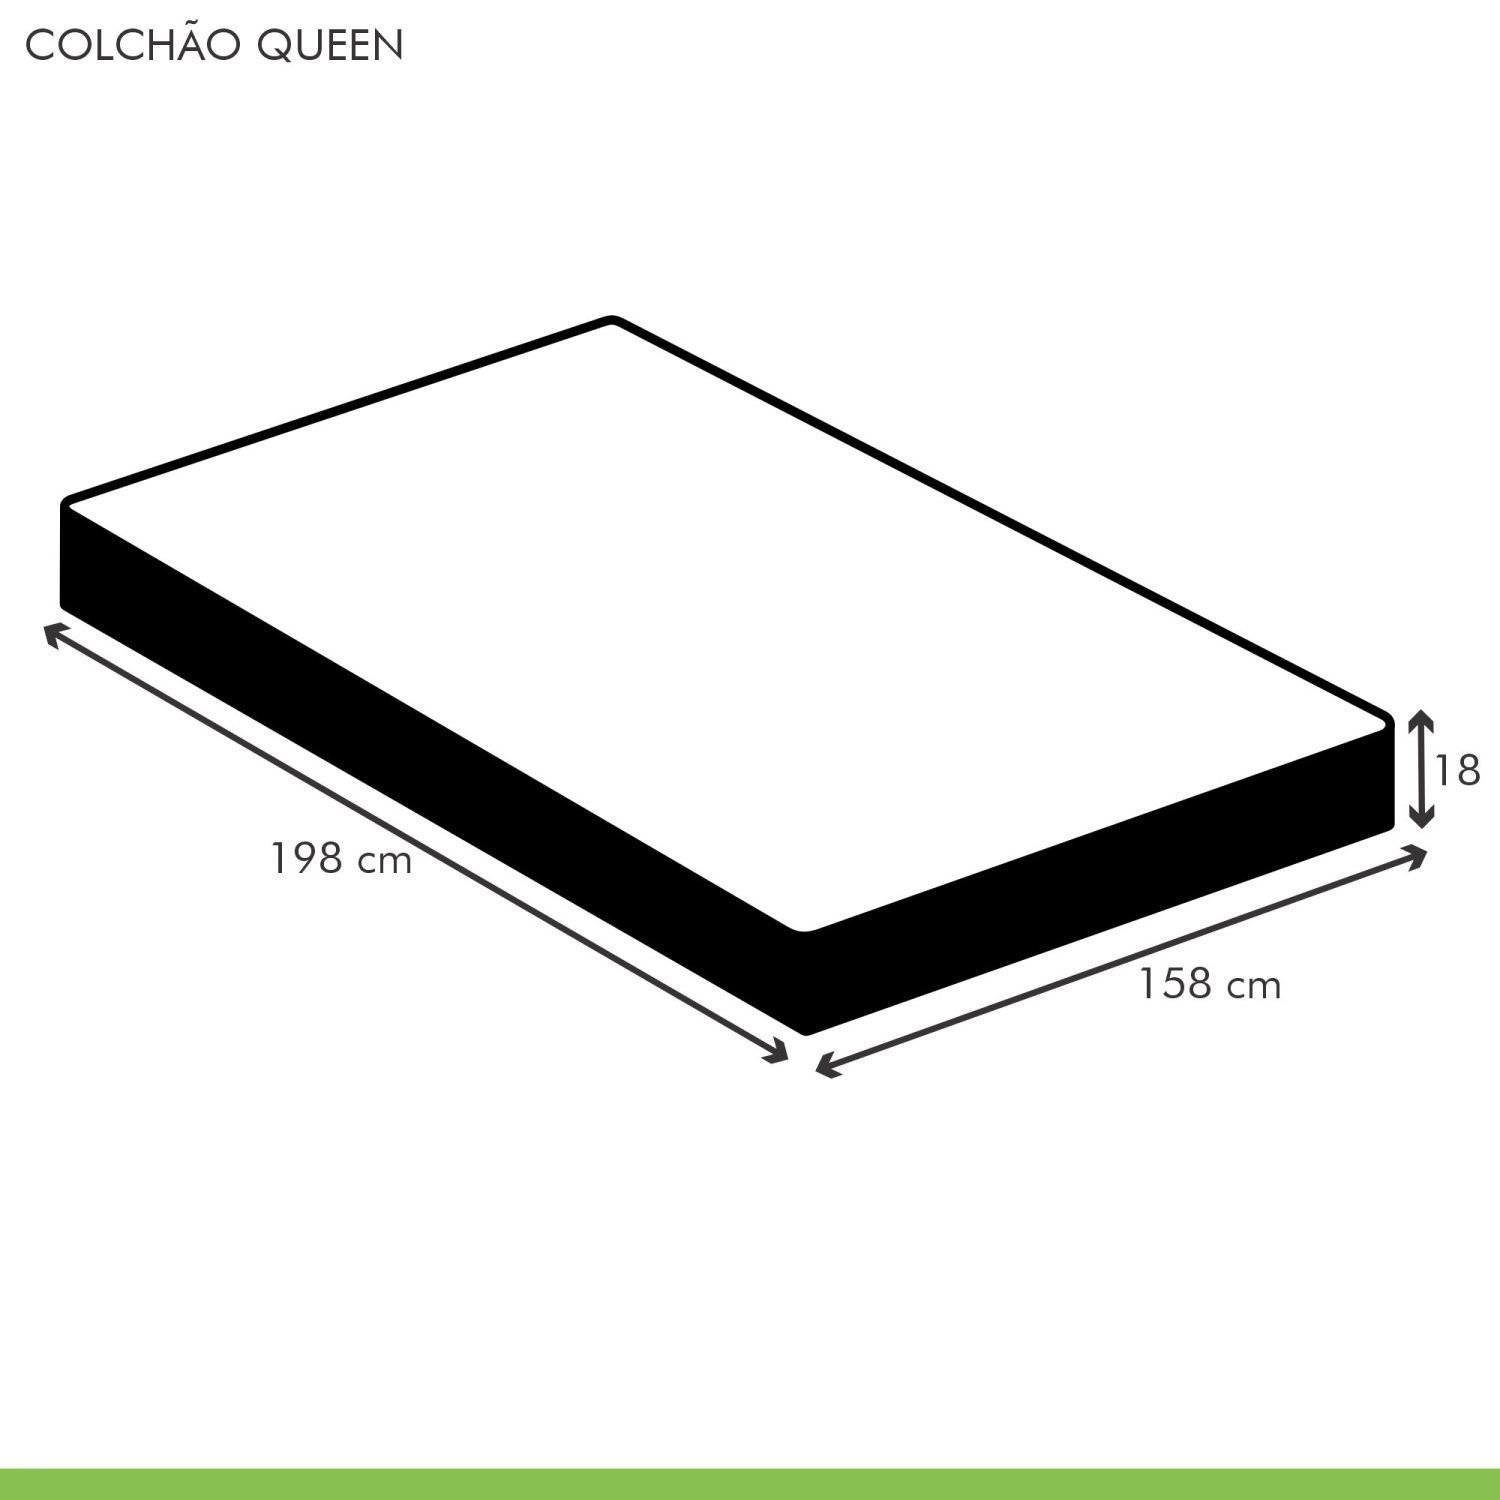 Colchão Queen Unique D45 Duoface 18x158x198cm  - 5